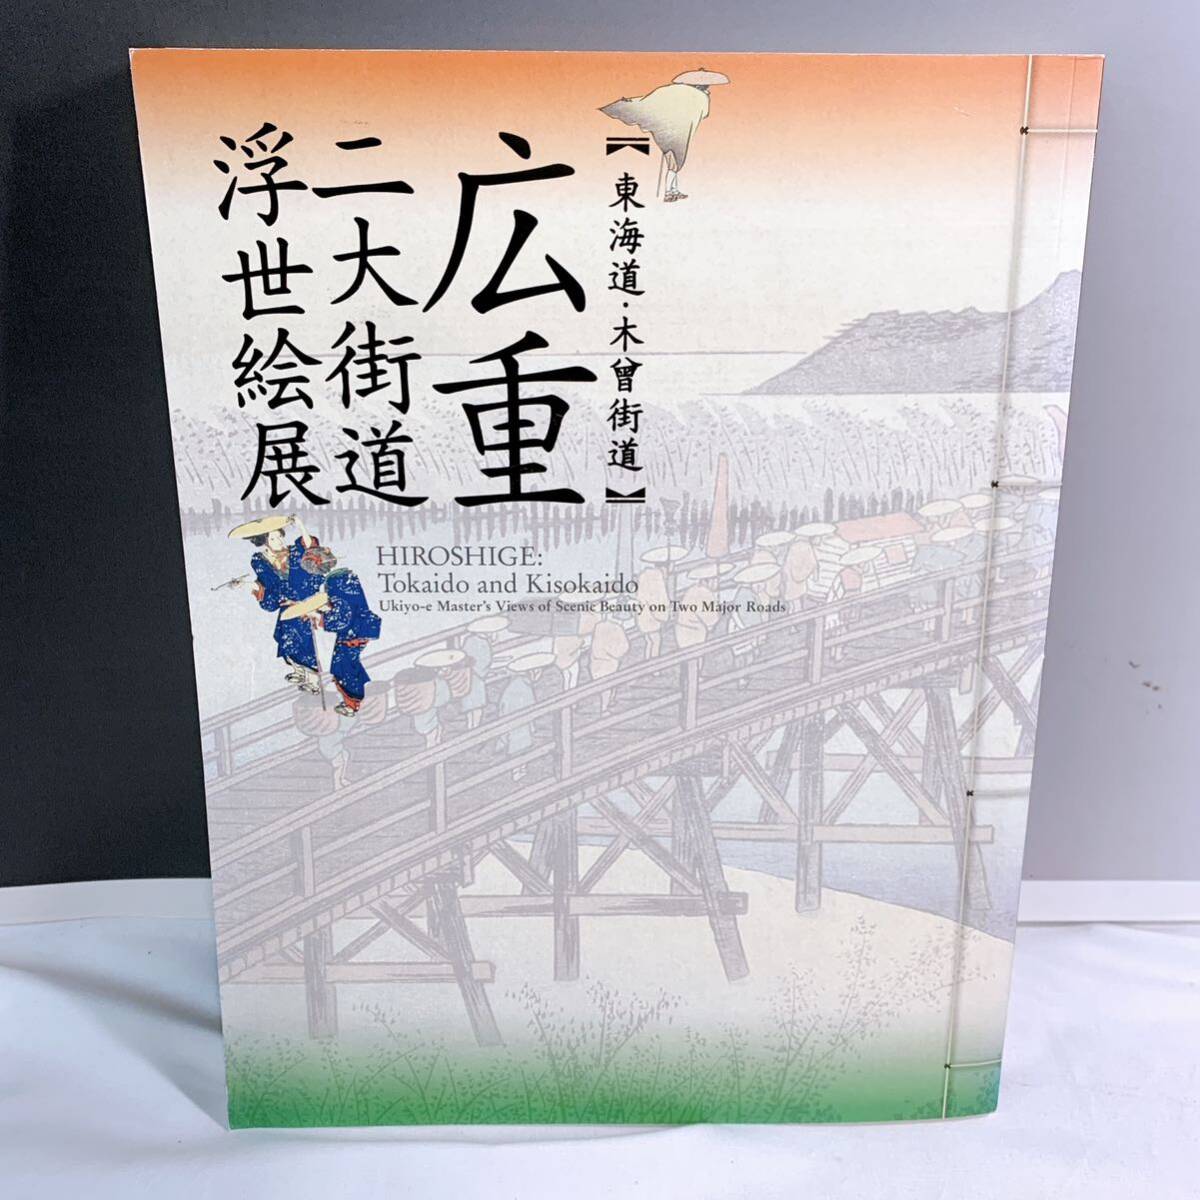 Q4-W4/9 Hiroshige Ukiyo-e-Ausstellung „Zwei große Autobahnen: Tokaido- und Kiso-Autobahn von Utagawa Hiroshige, Malerei, Kunstbuch, Sammlung, Kunstbuch